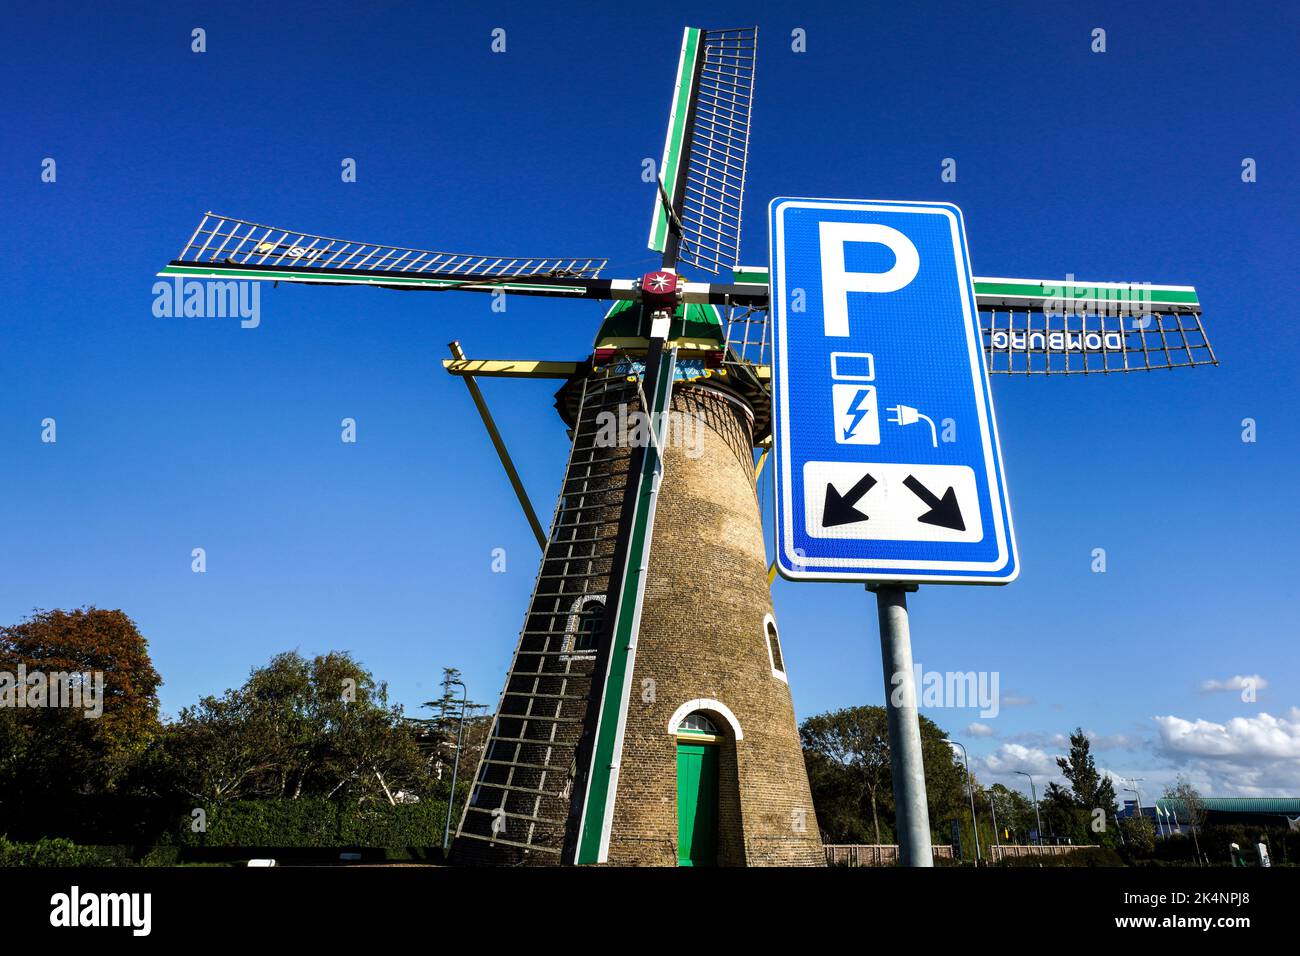 Elettricità da energia eolica: Parcheggio con punto di ricarica per veicoli elettrici di fronte allo storico mulino a vento dal 1817 a Domburg, nei Paesi Bassi Foto Stock